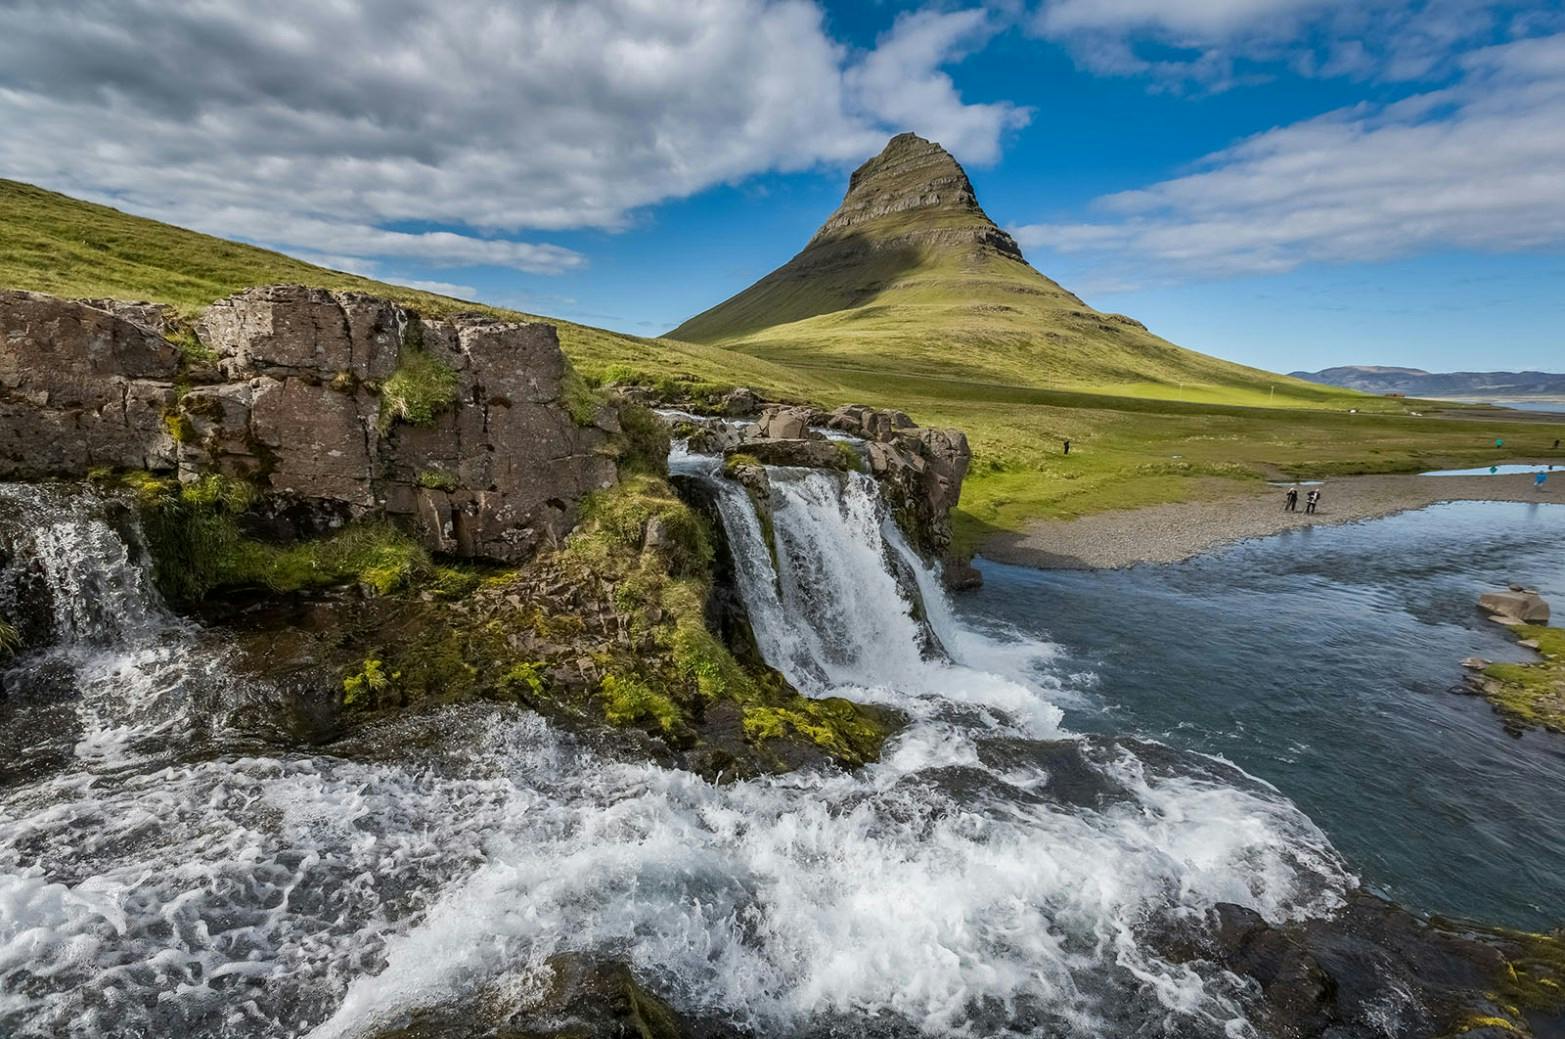 Image - 2 Week Iceland Itinerary